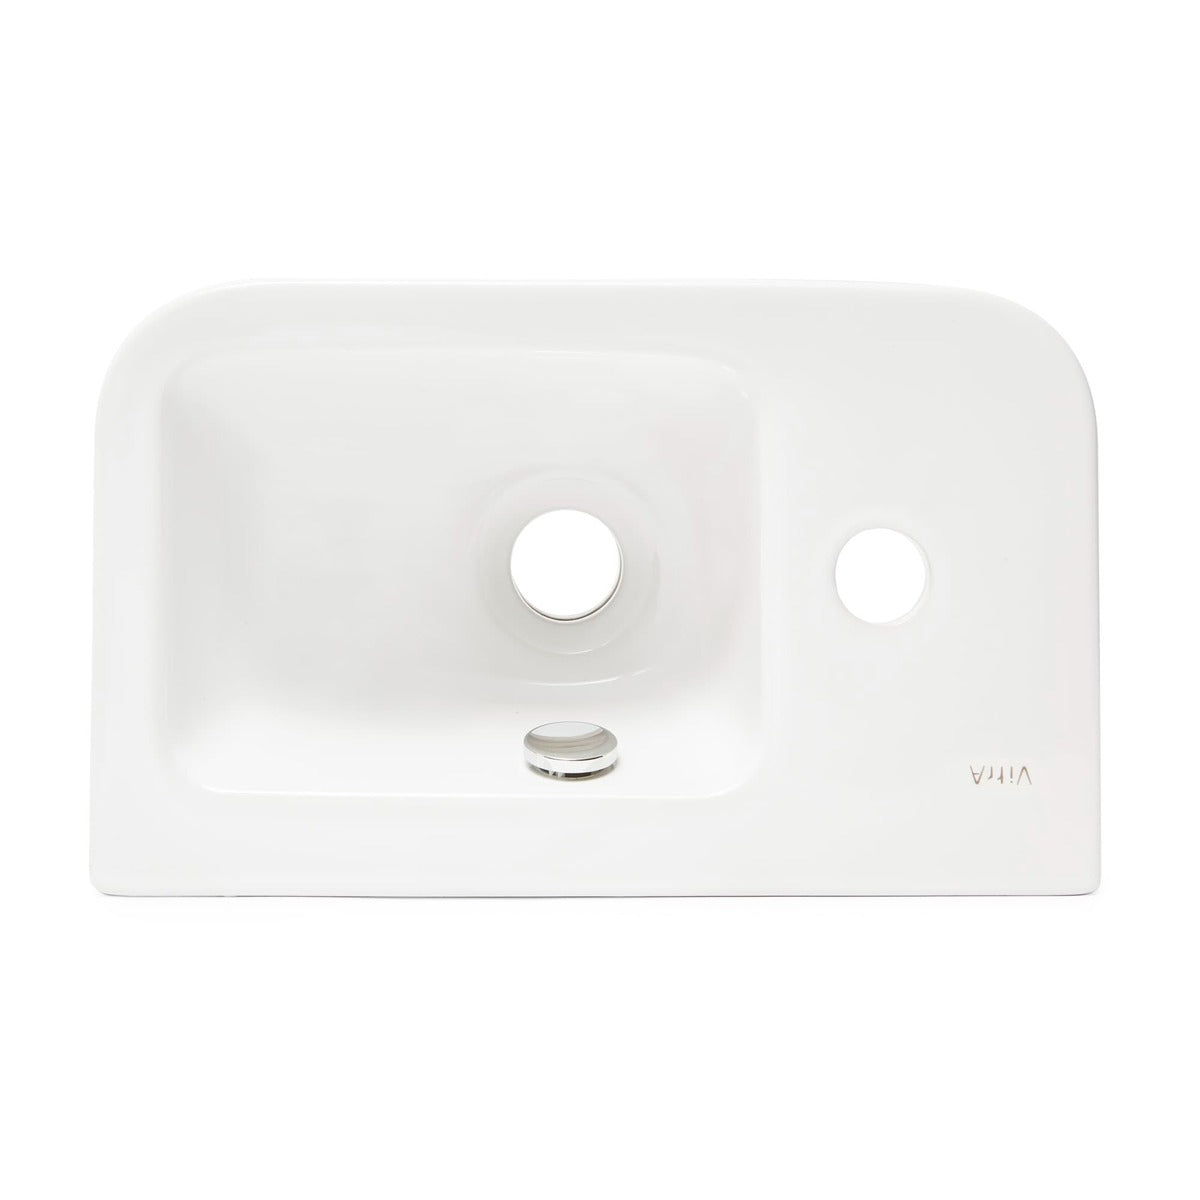 Umivalniki 7090-003-0028 Vitra Integra 37 x 22 cm leva izvedba keramični umivalnik z odprtino za armaturo | KOPALNICA-ONLINE.SI